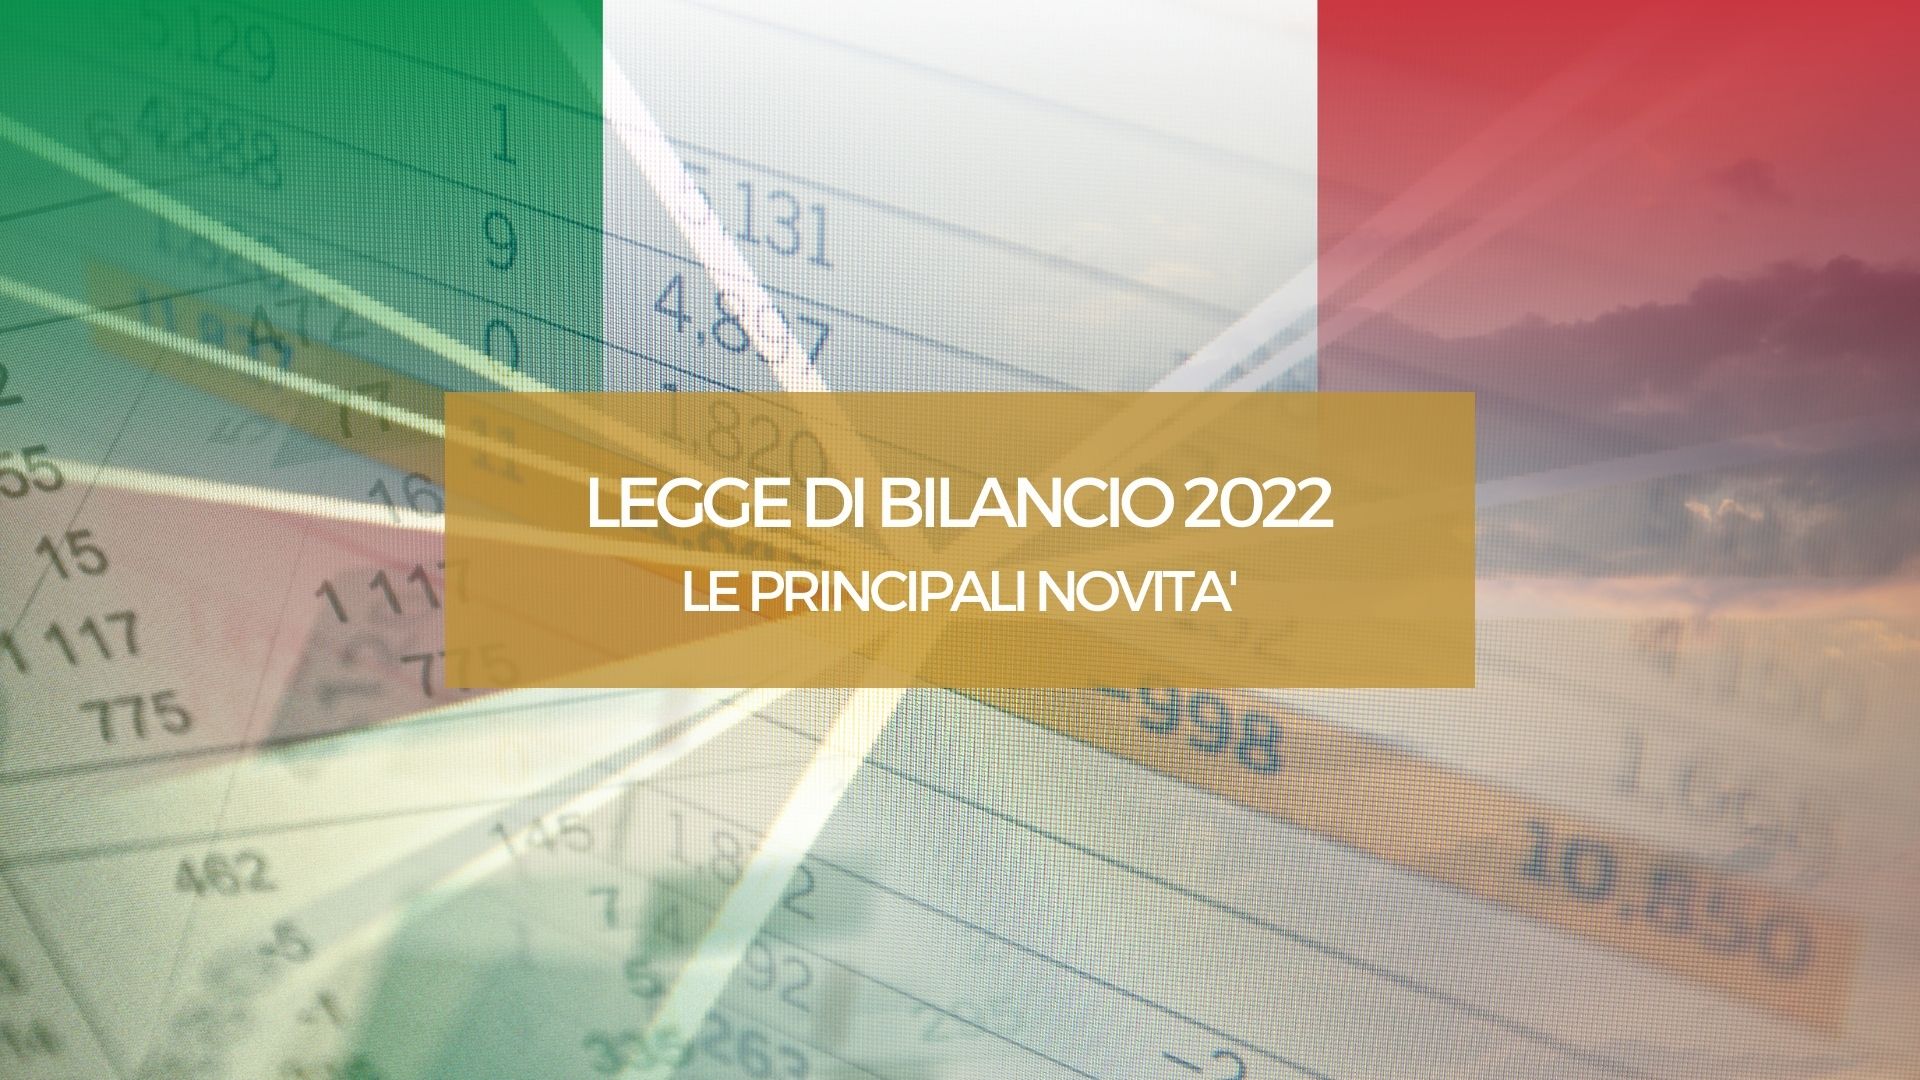 LEGGE DI BILANCIO 2022